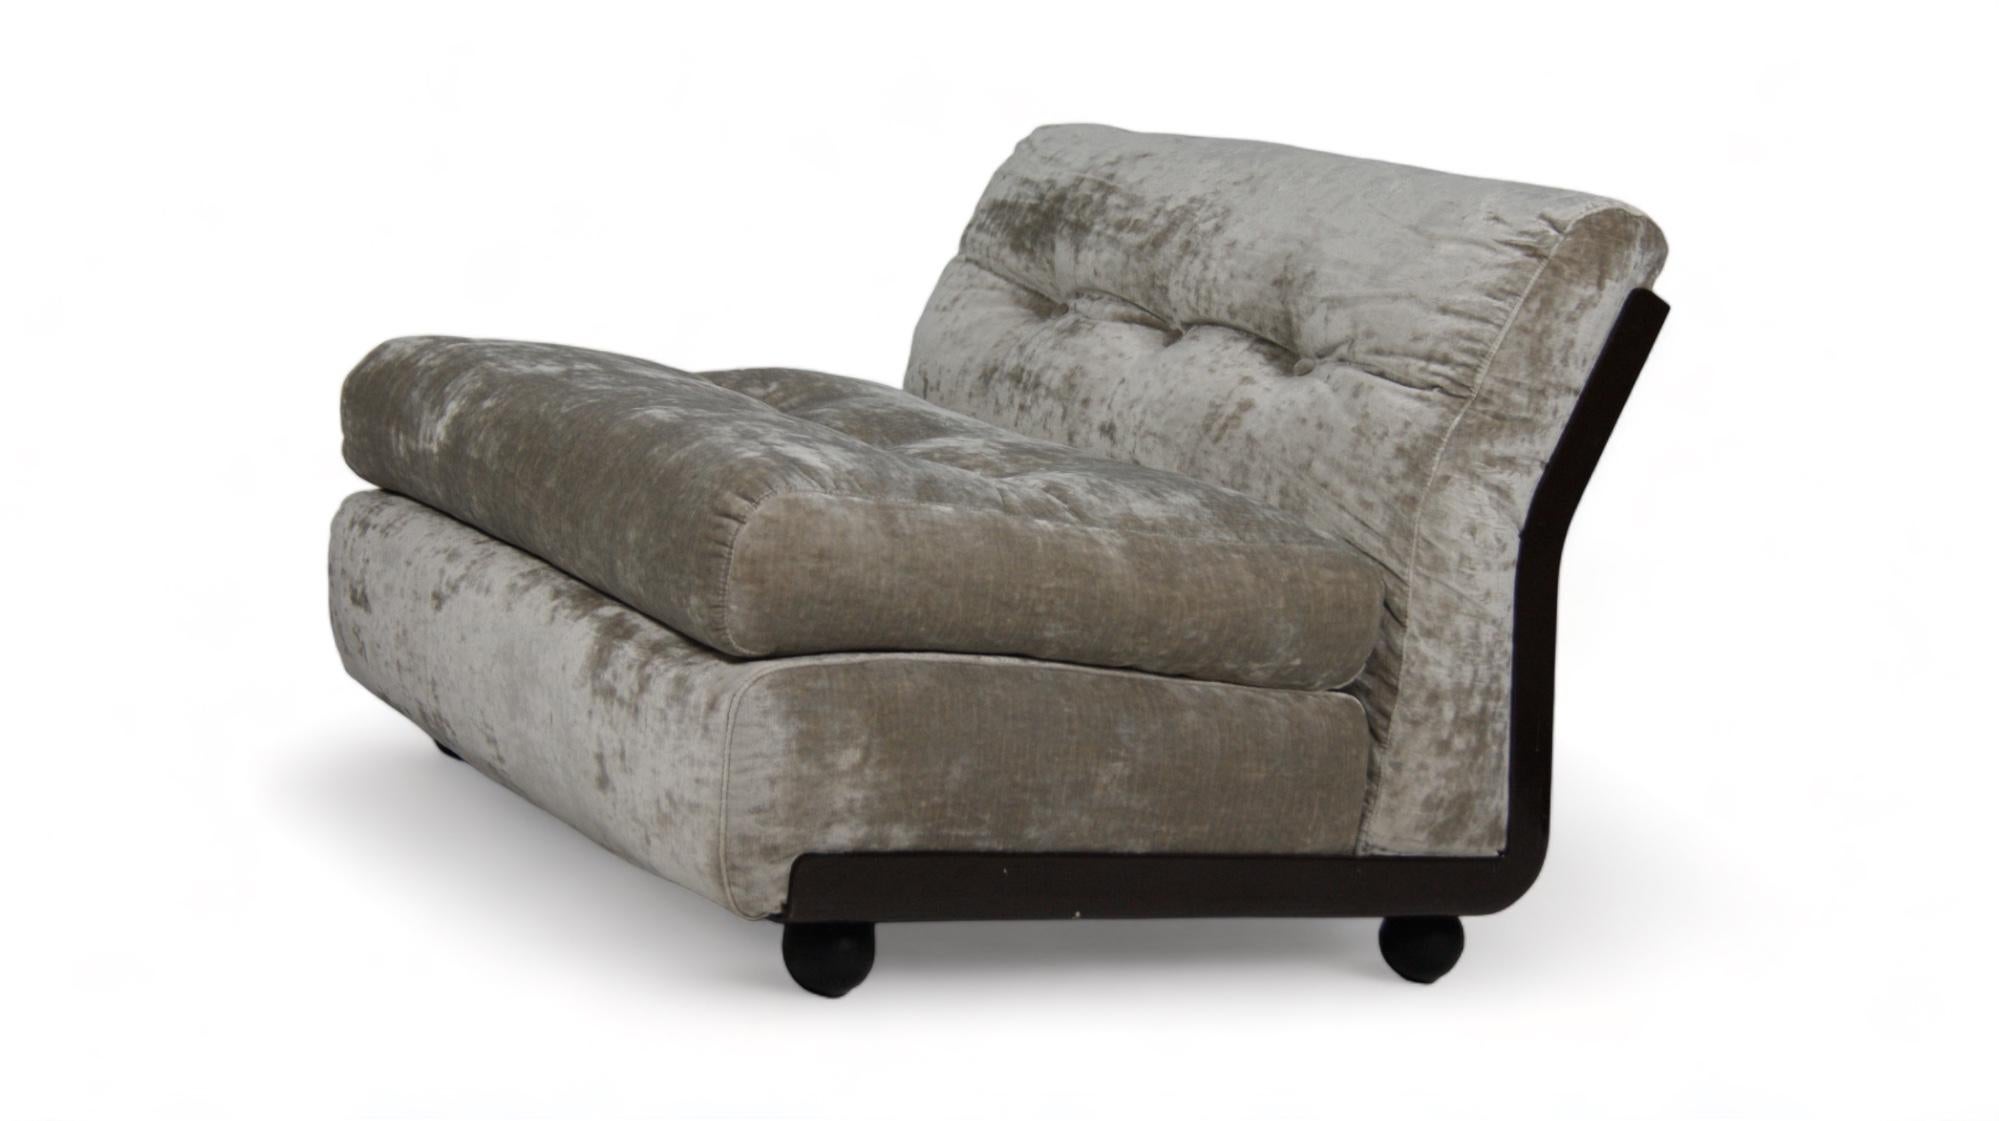 B&B Italia Mario Bellini Amanta Italian design modular sofa in velvet For Sale 3